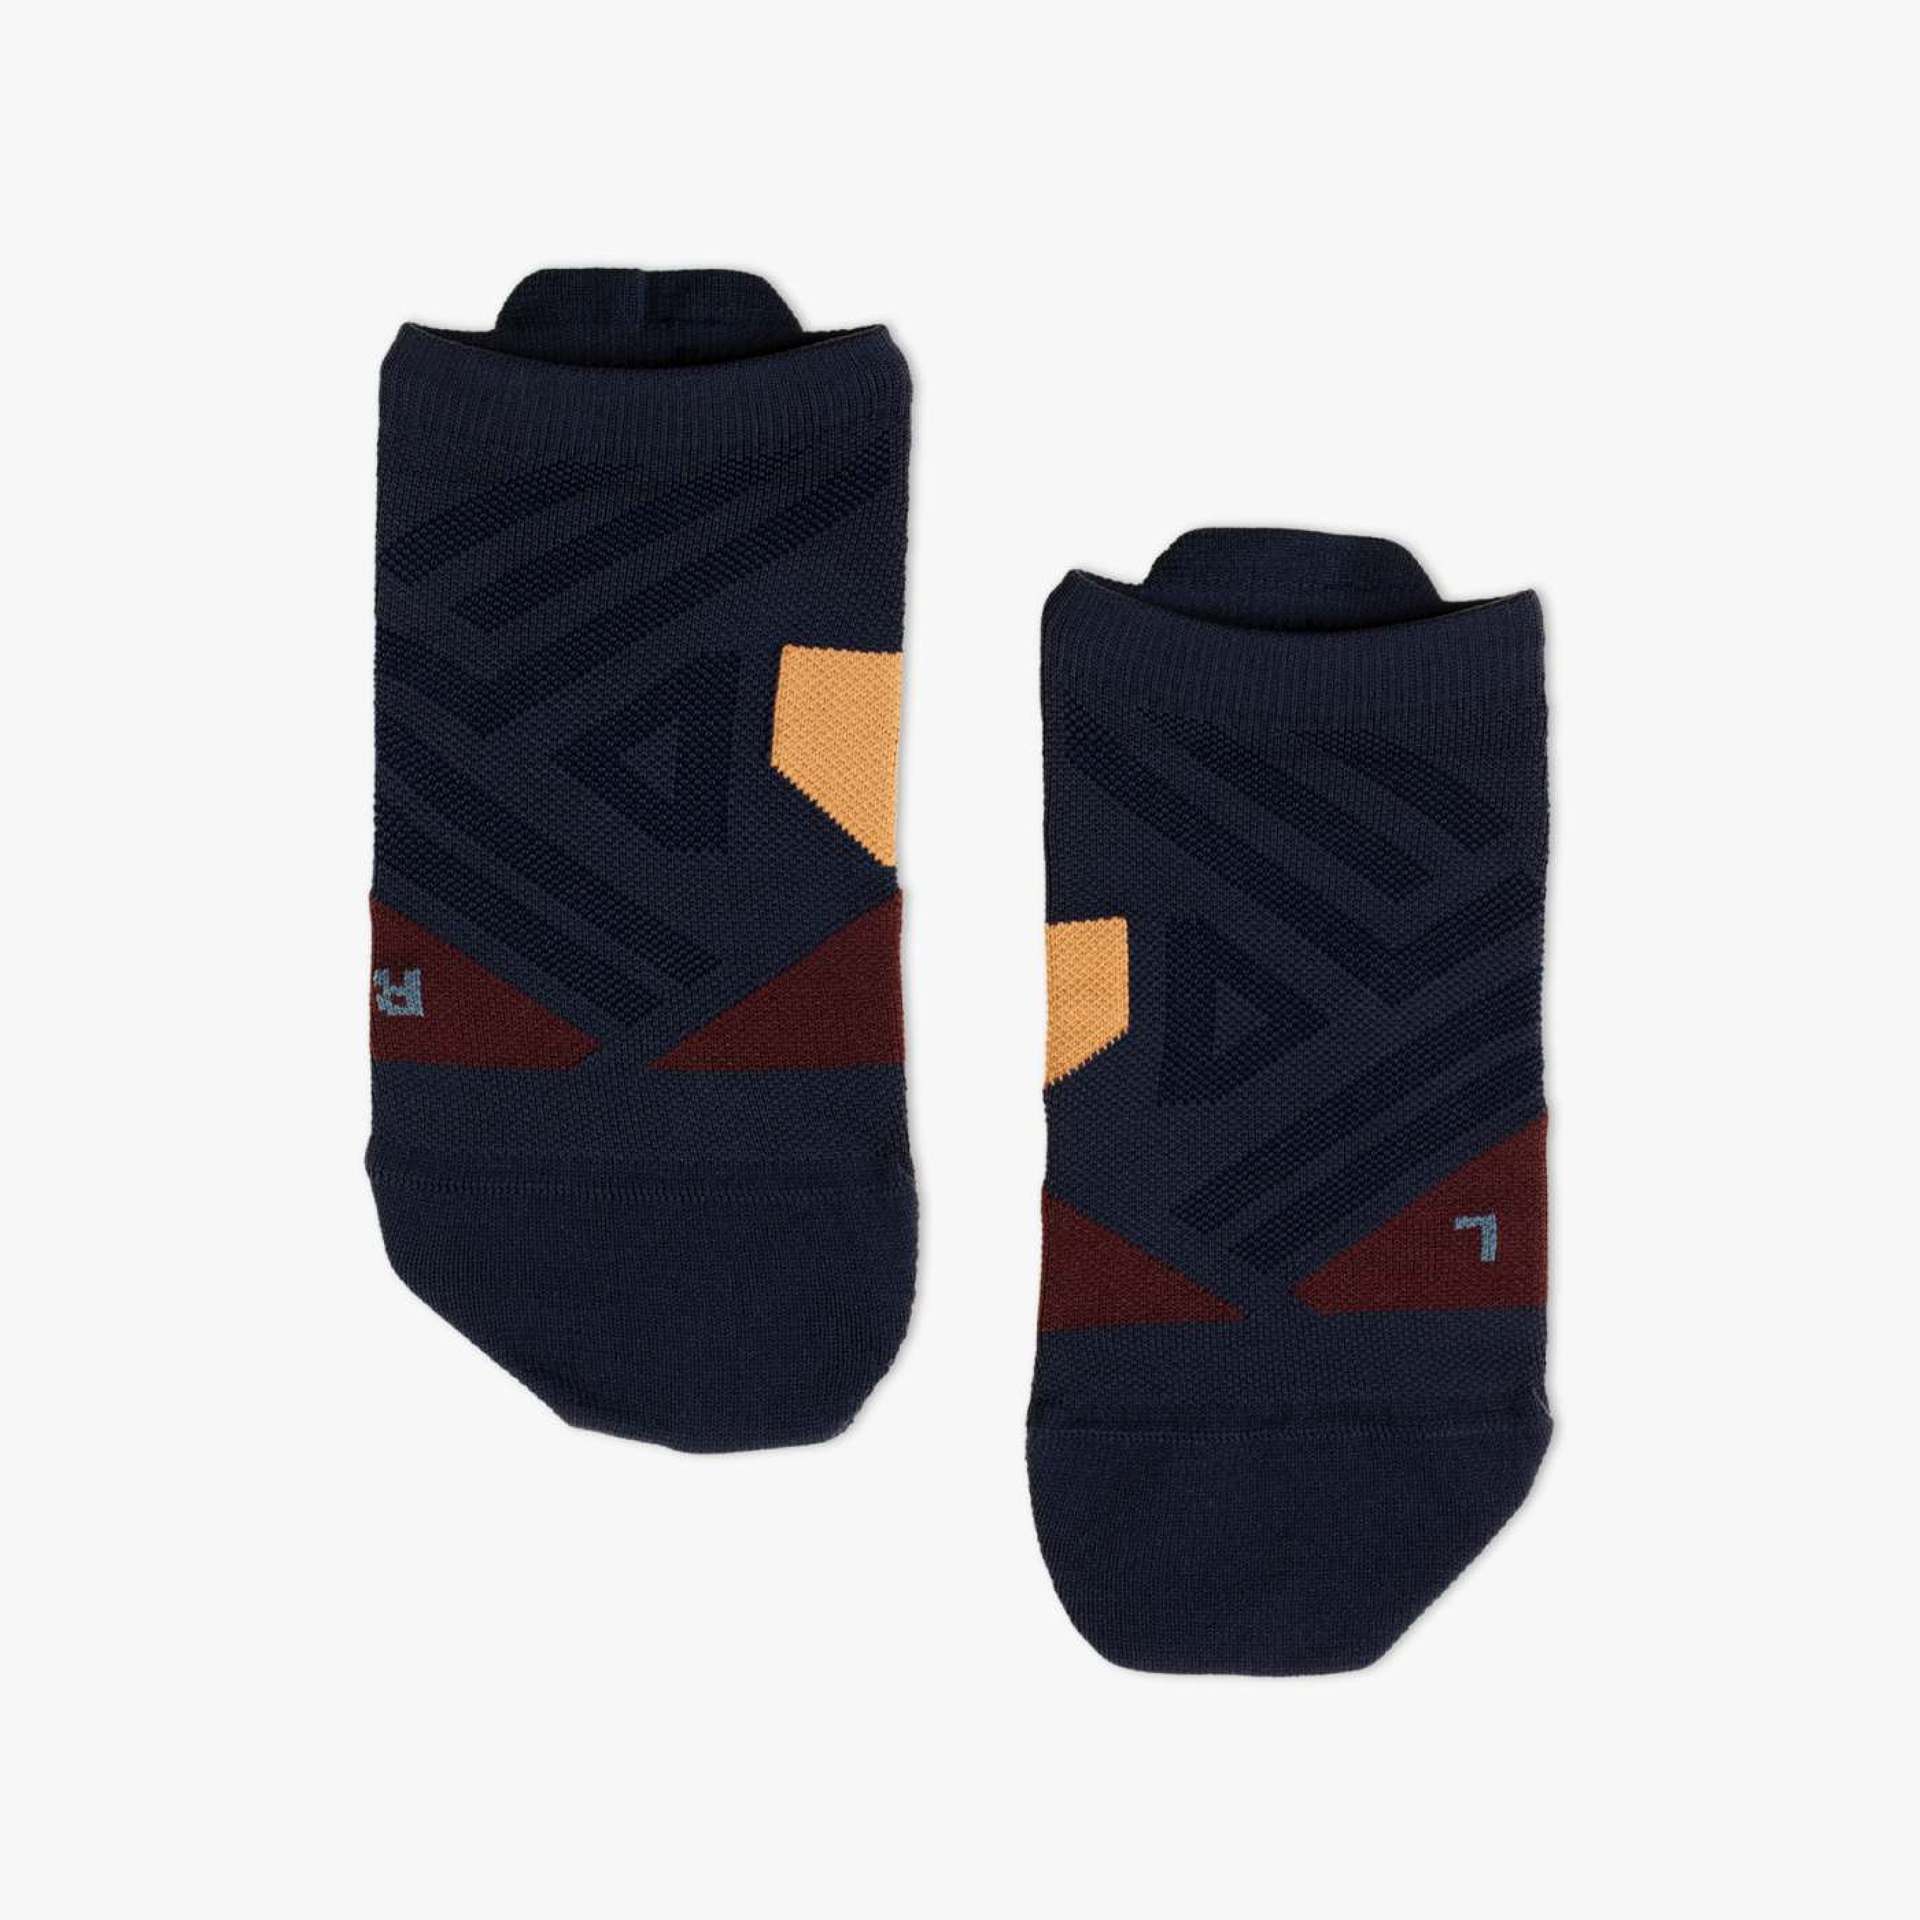 Běžecké ponožky ON Midnight/Tan, Low Sock M